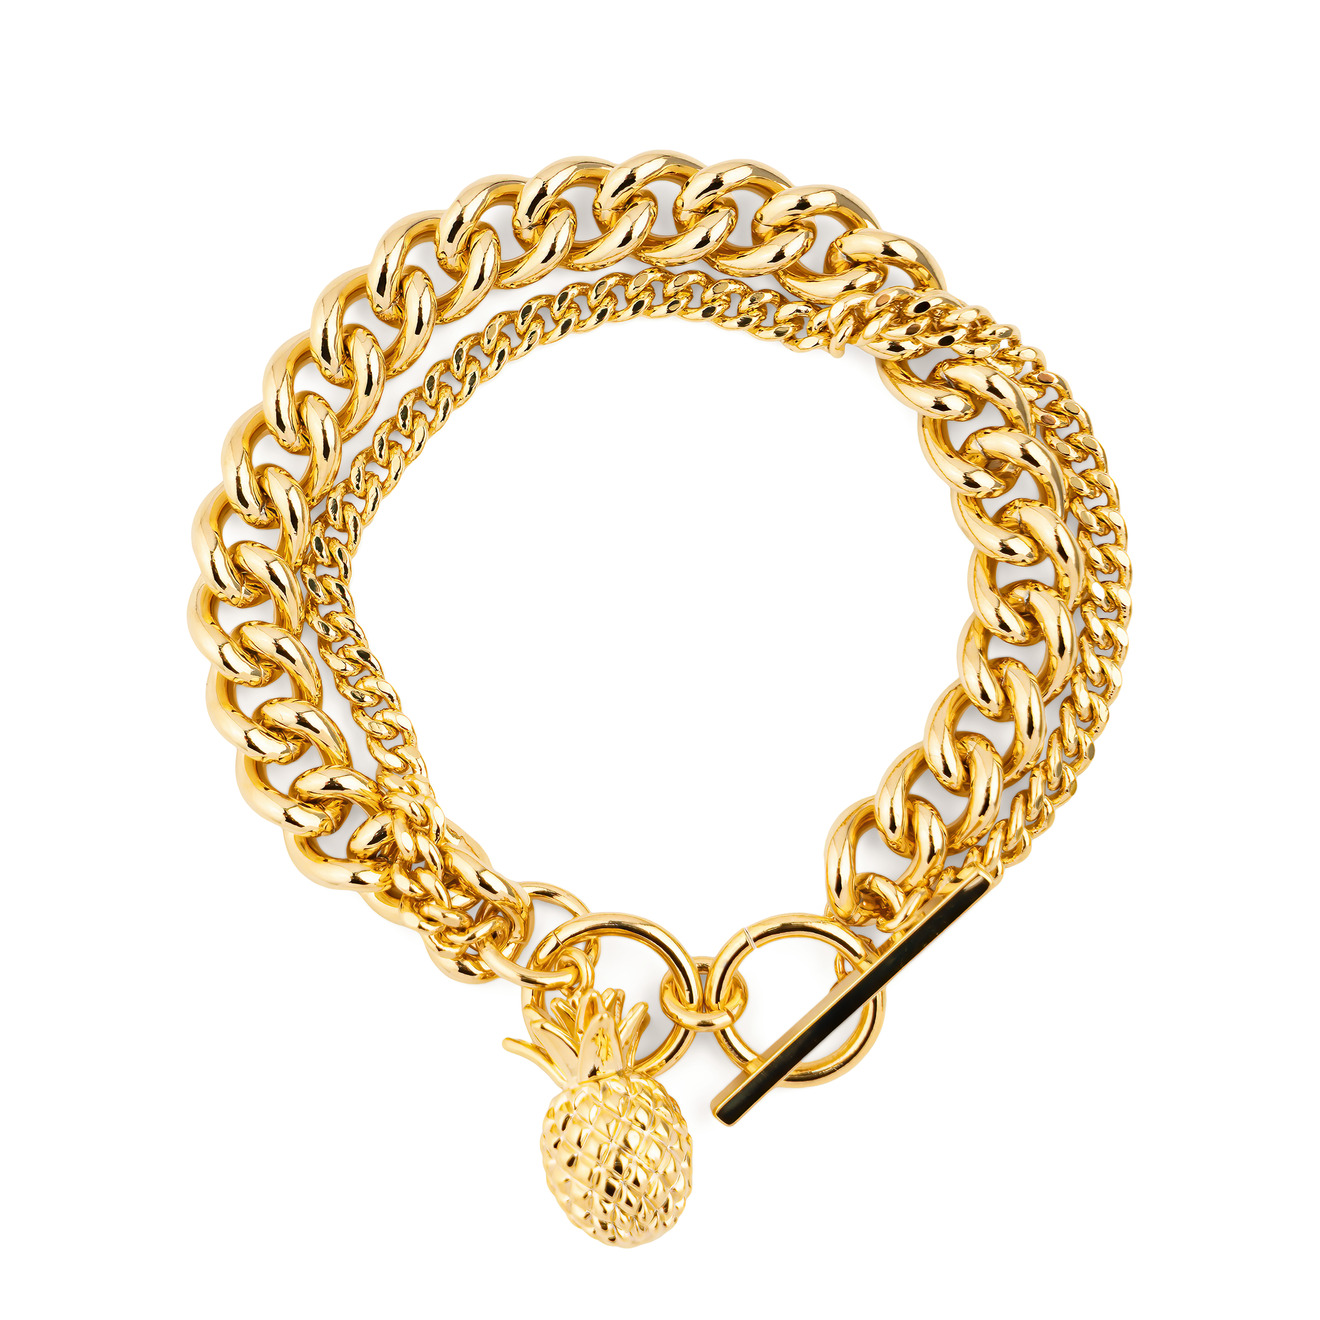 Free Form Jewelry Двойной золотистый браслет с ананасом lisa smith золотистый открытый браслет с античным мужским ликом